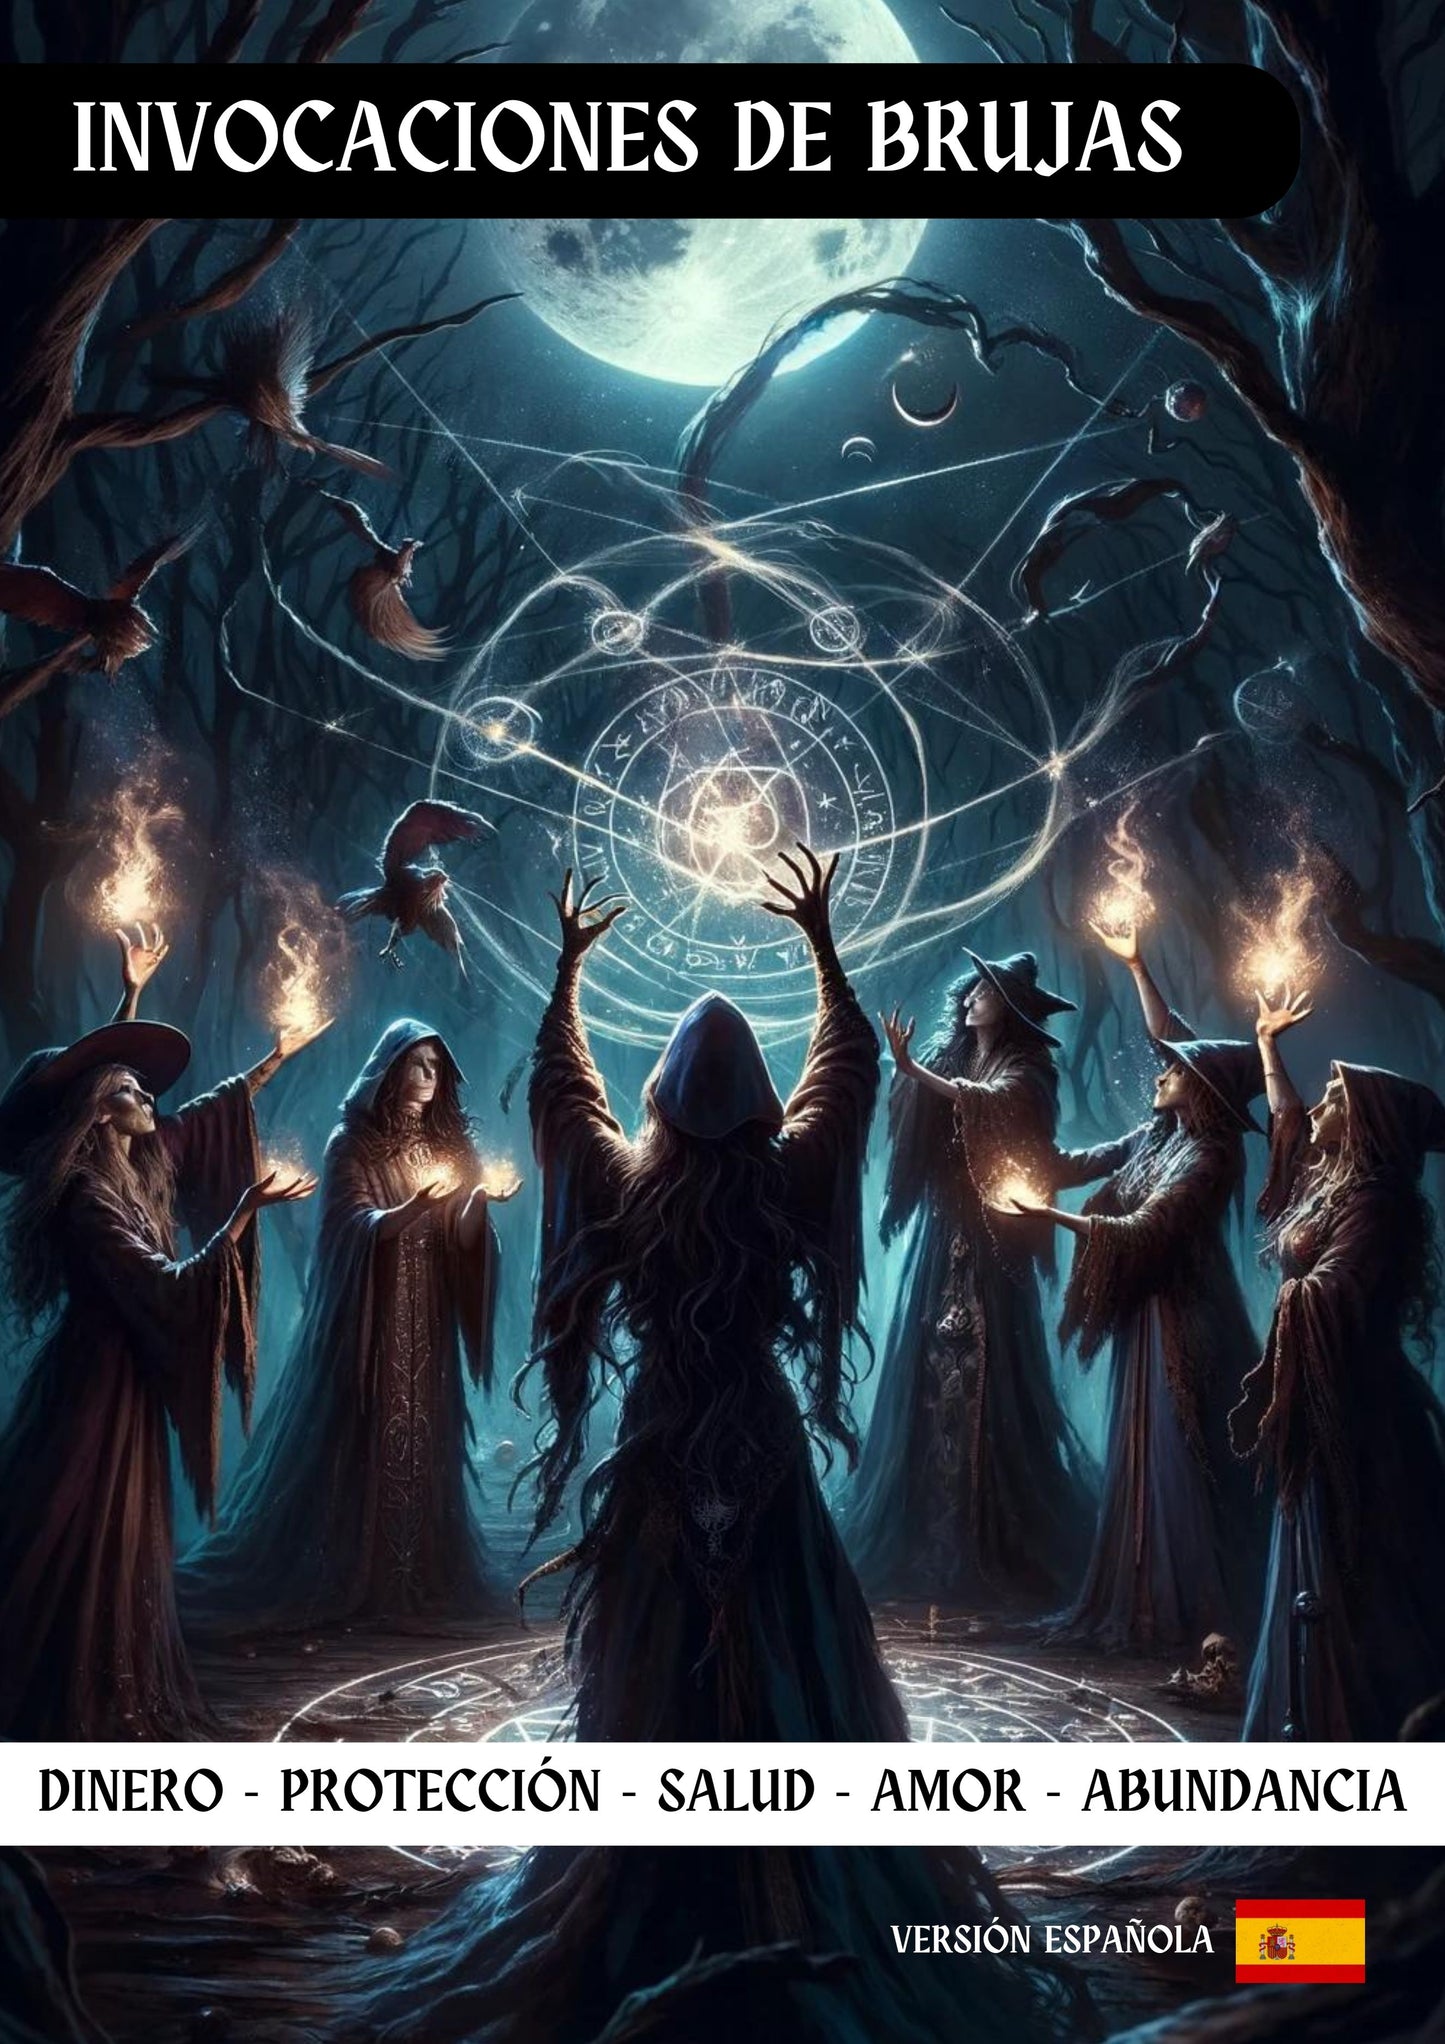 Maleficarum Incantationes: A Guide ad Cantus Potens et Artis Magicae Posters - Abraxas Amuletes ® Magicae Talismans Initiationes